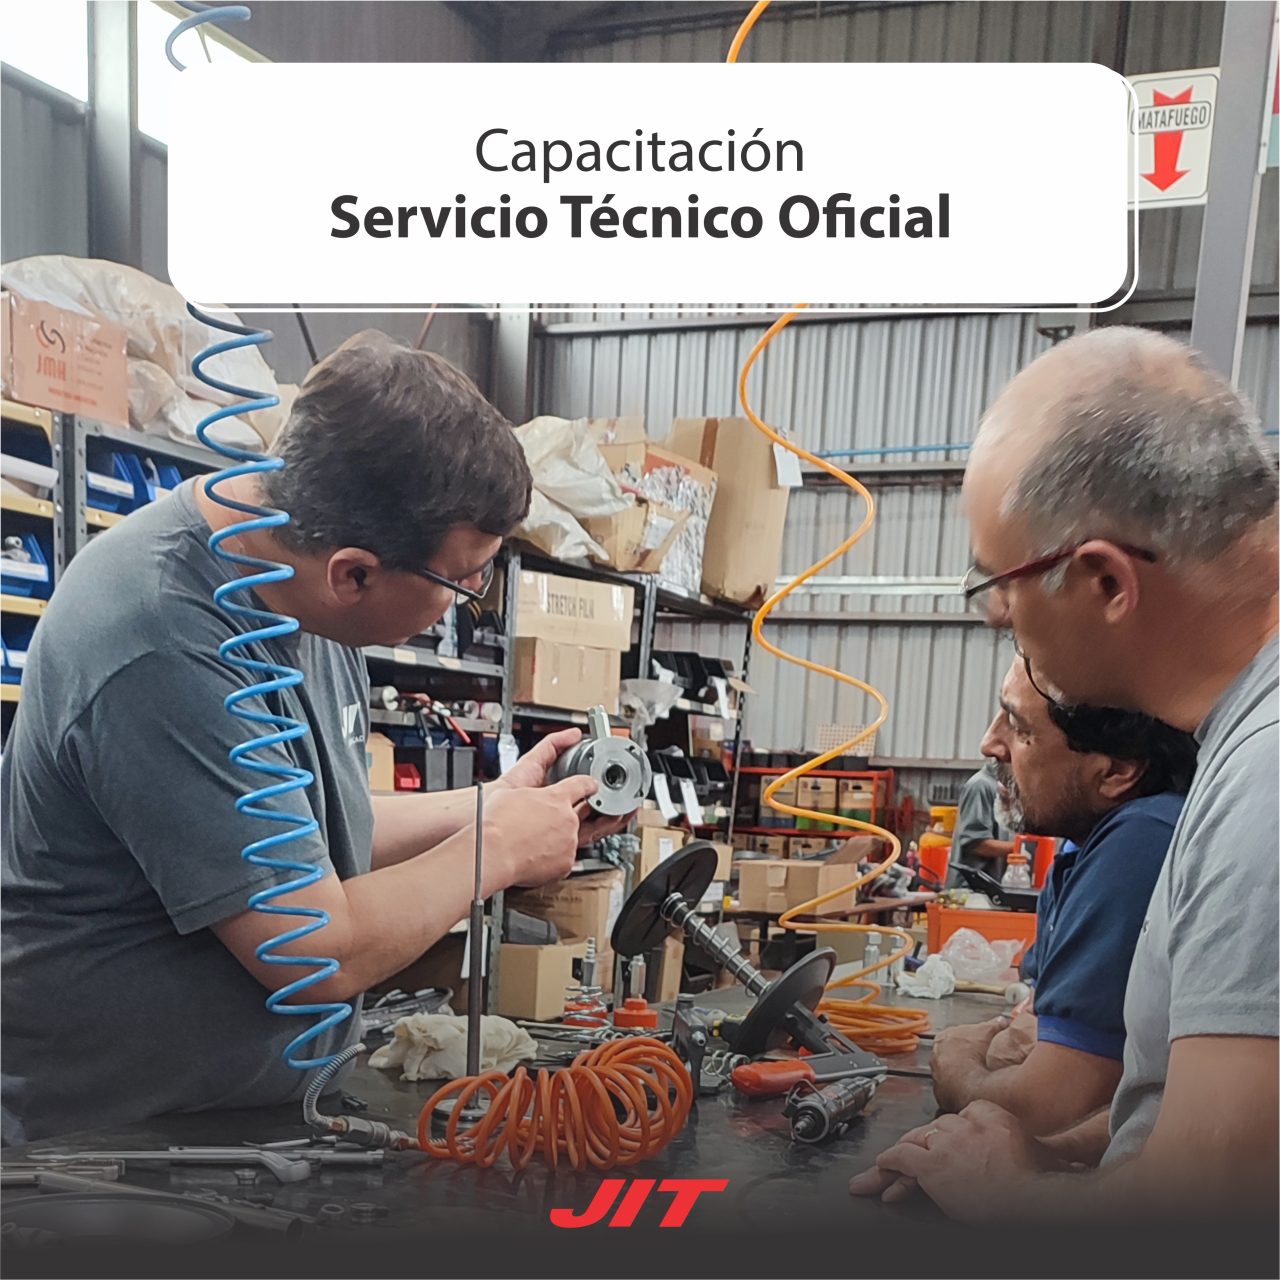 Capacitacion-Servicio-Tecnico-Oficial-1280x1280.jpg